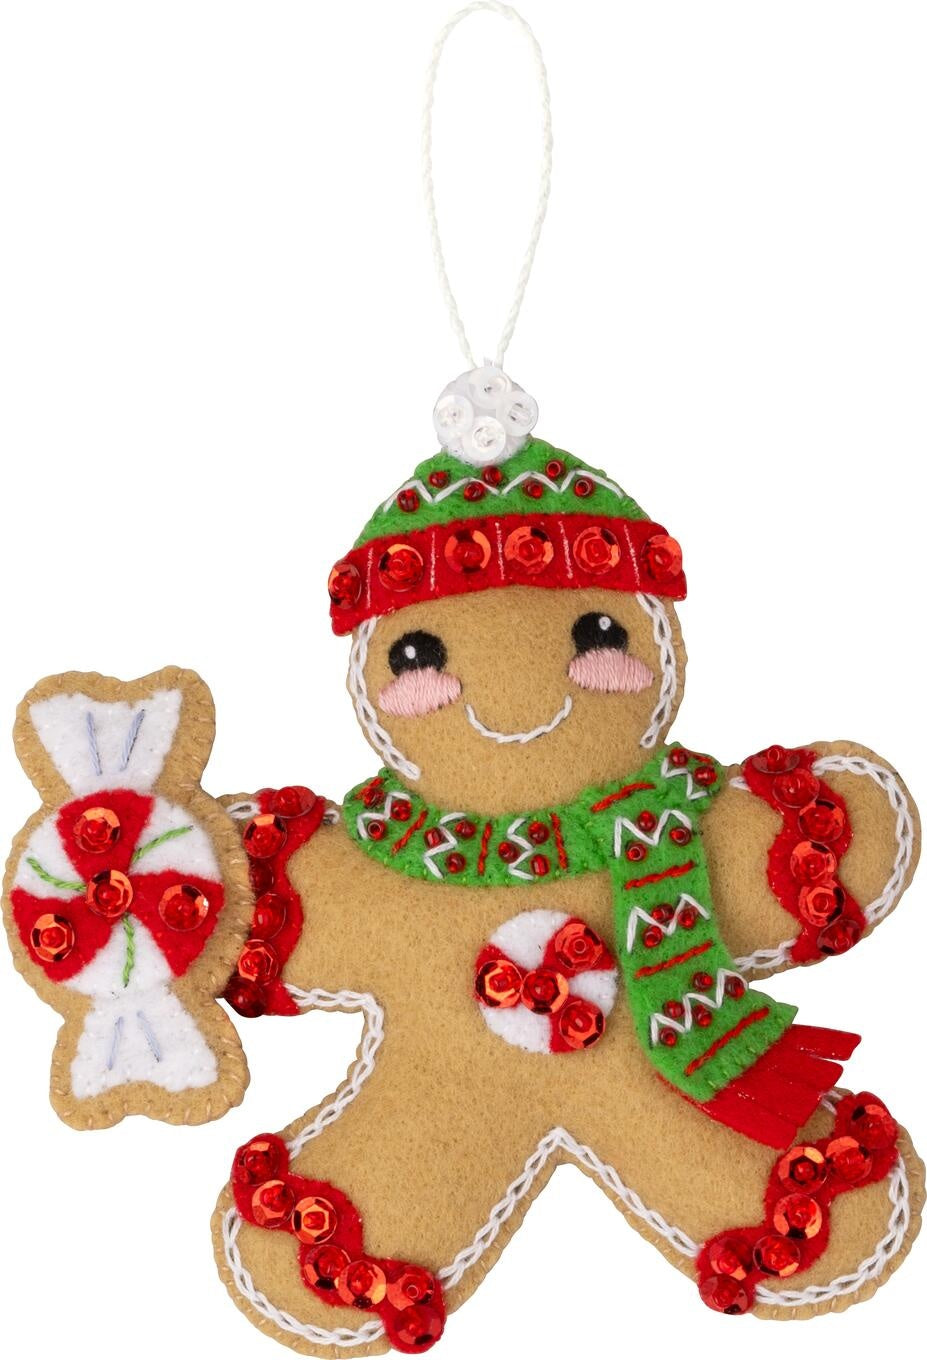 Bucilla Felt Ornaments Applique Kit Set Of 4-Gingerbread Christmas